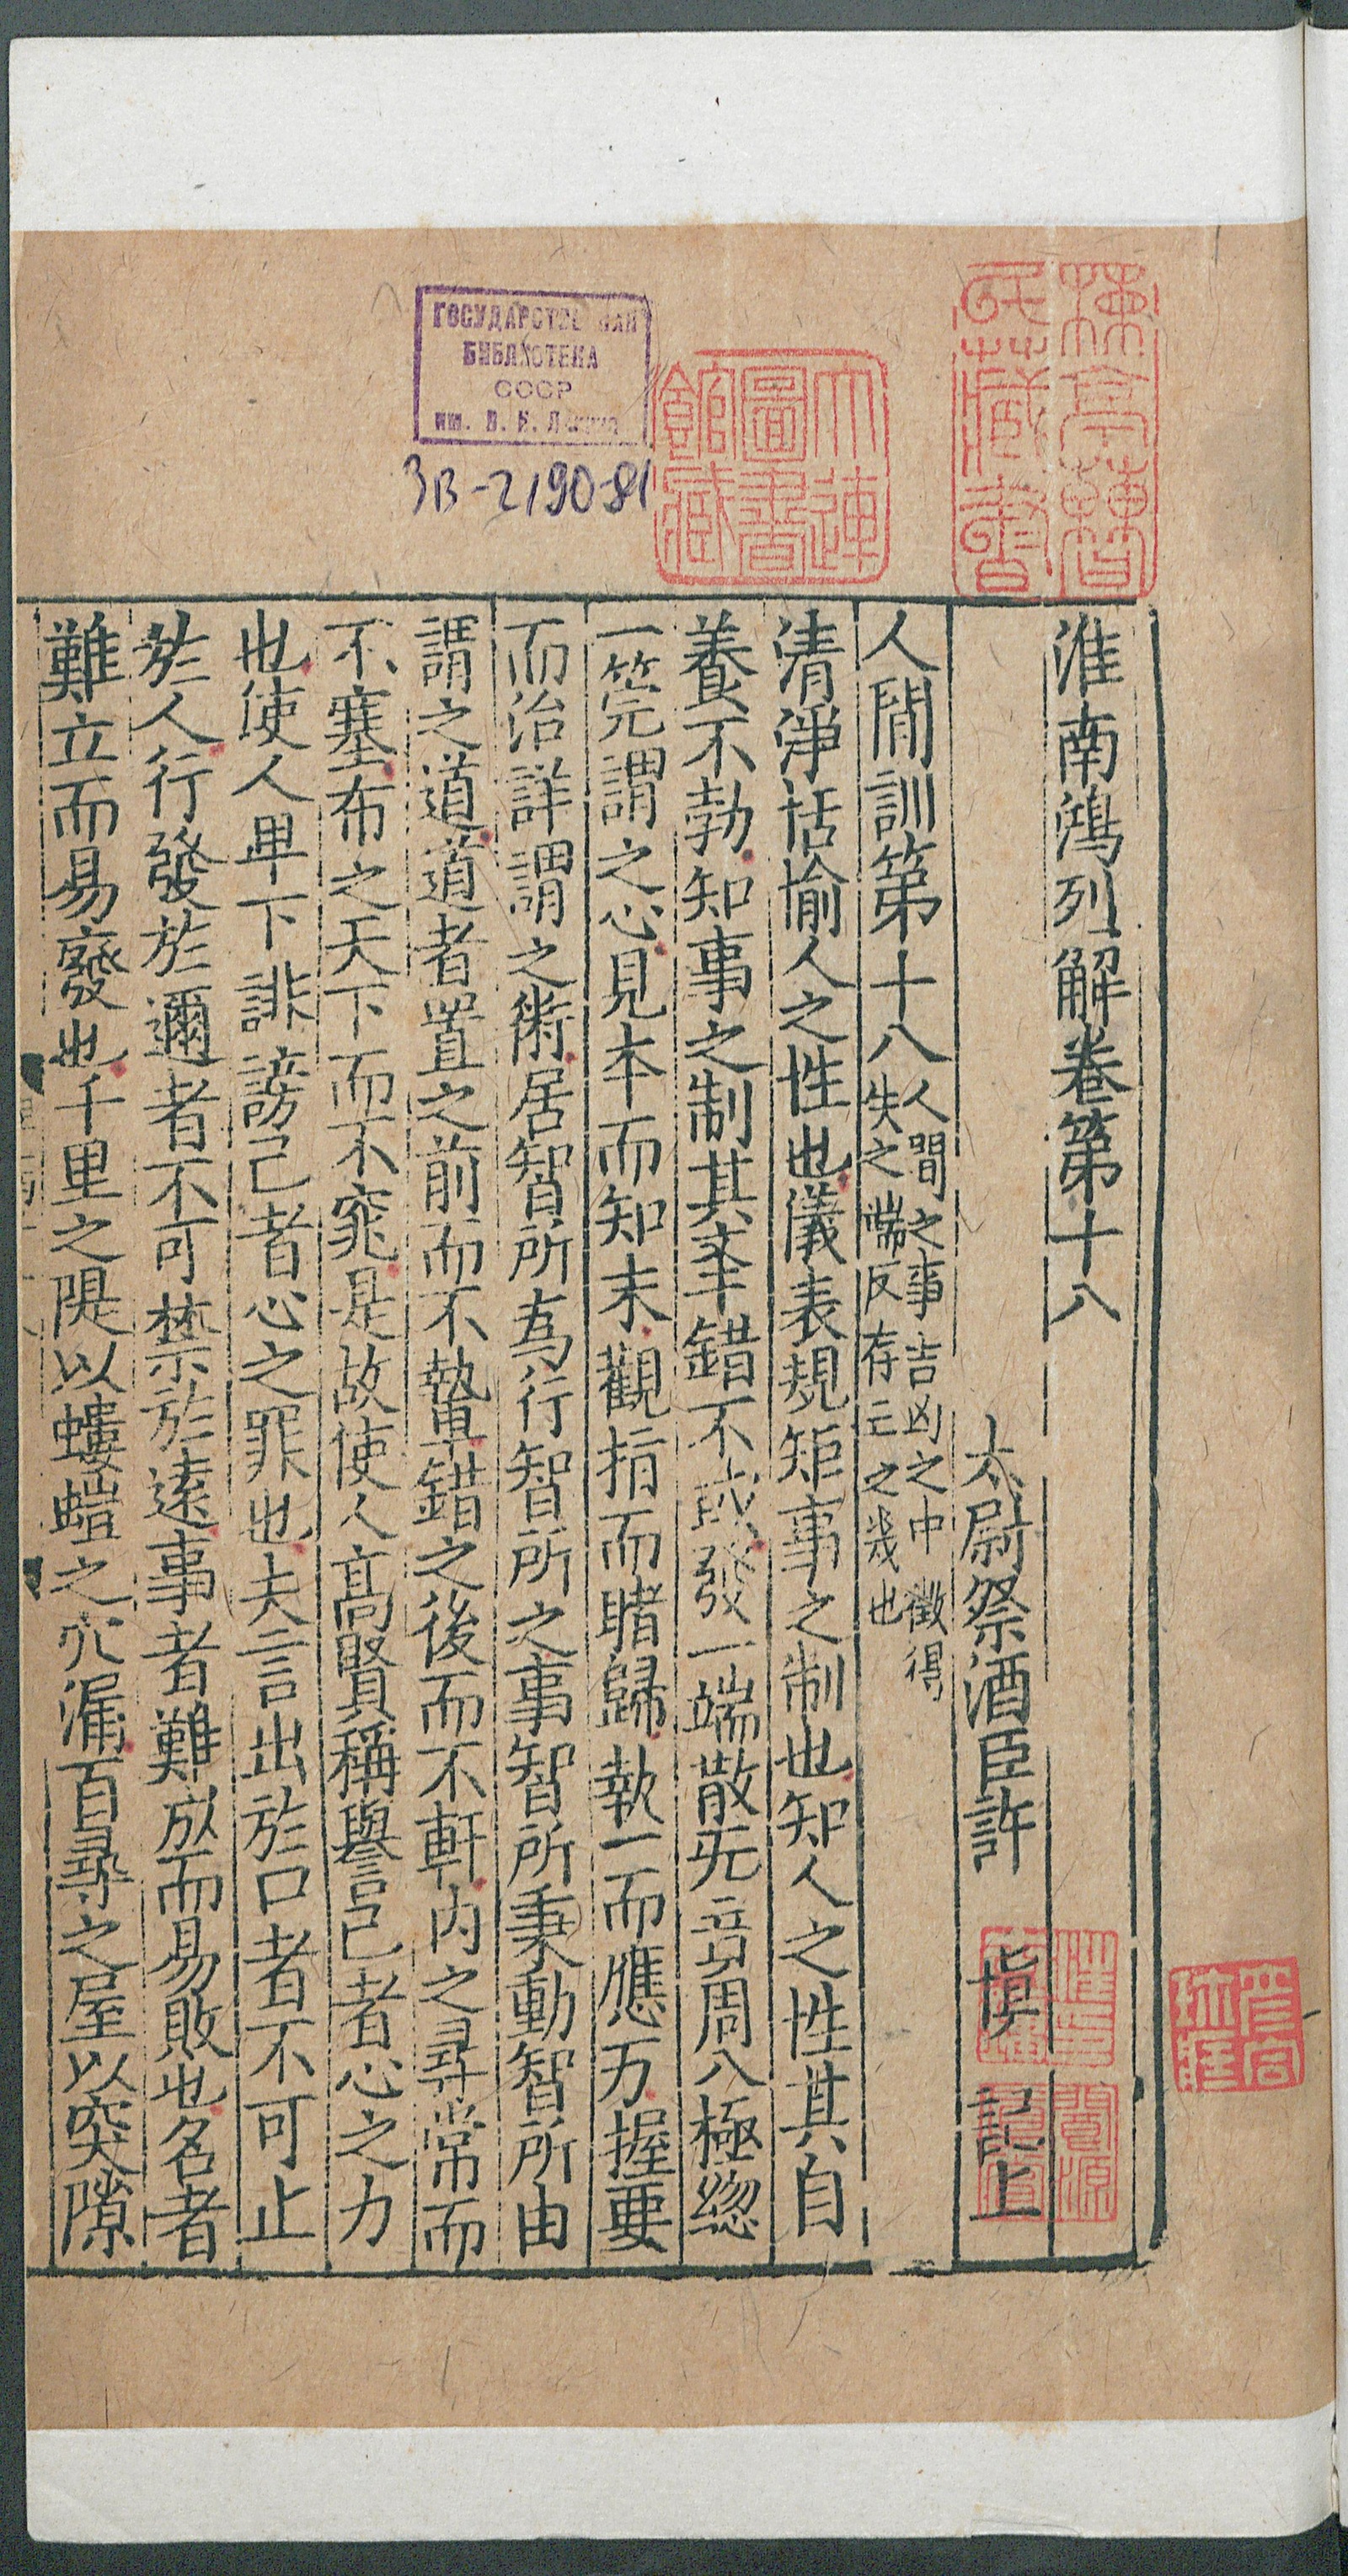 Изображение книги 淮南鴻烈解. Т. 11 Цзюани 18-19